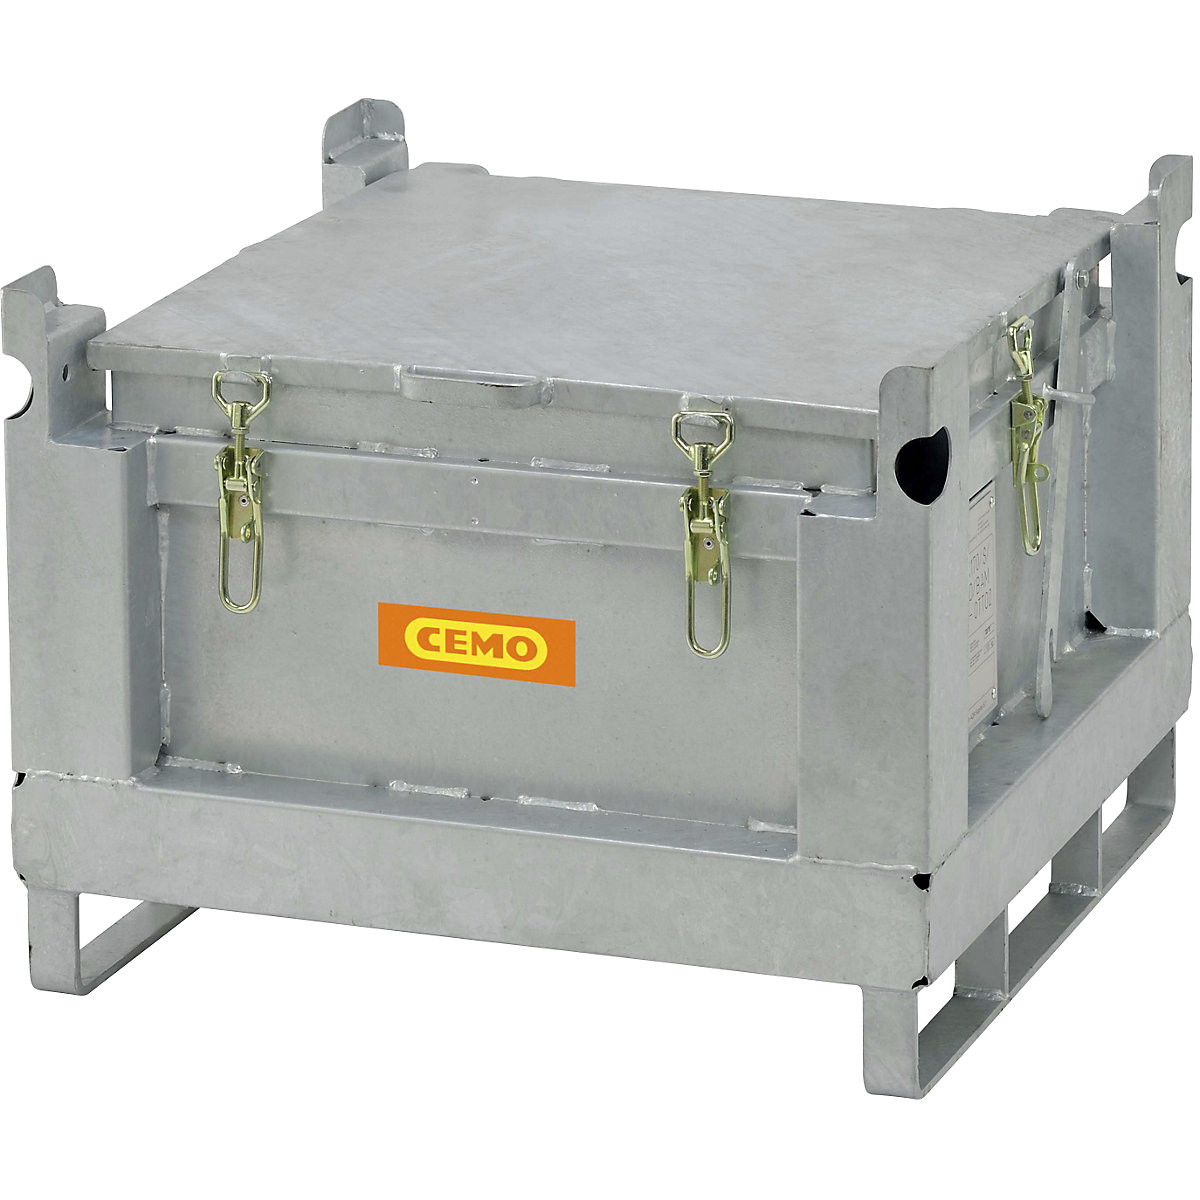 Contenitore in acciaio per stoccaggio e trasporto di batterie ricaricabili – CEMO